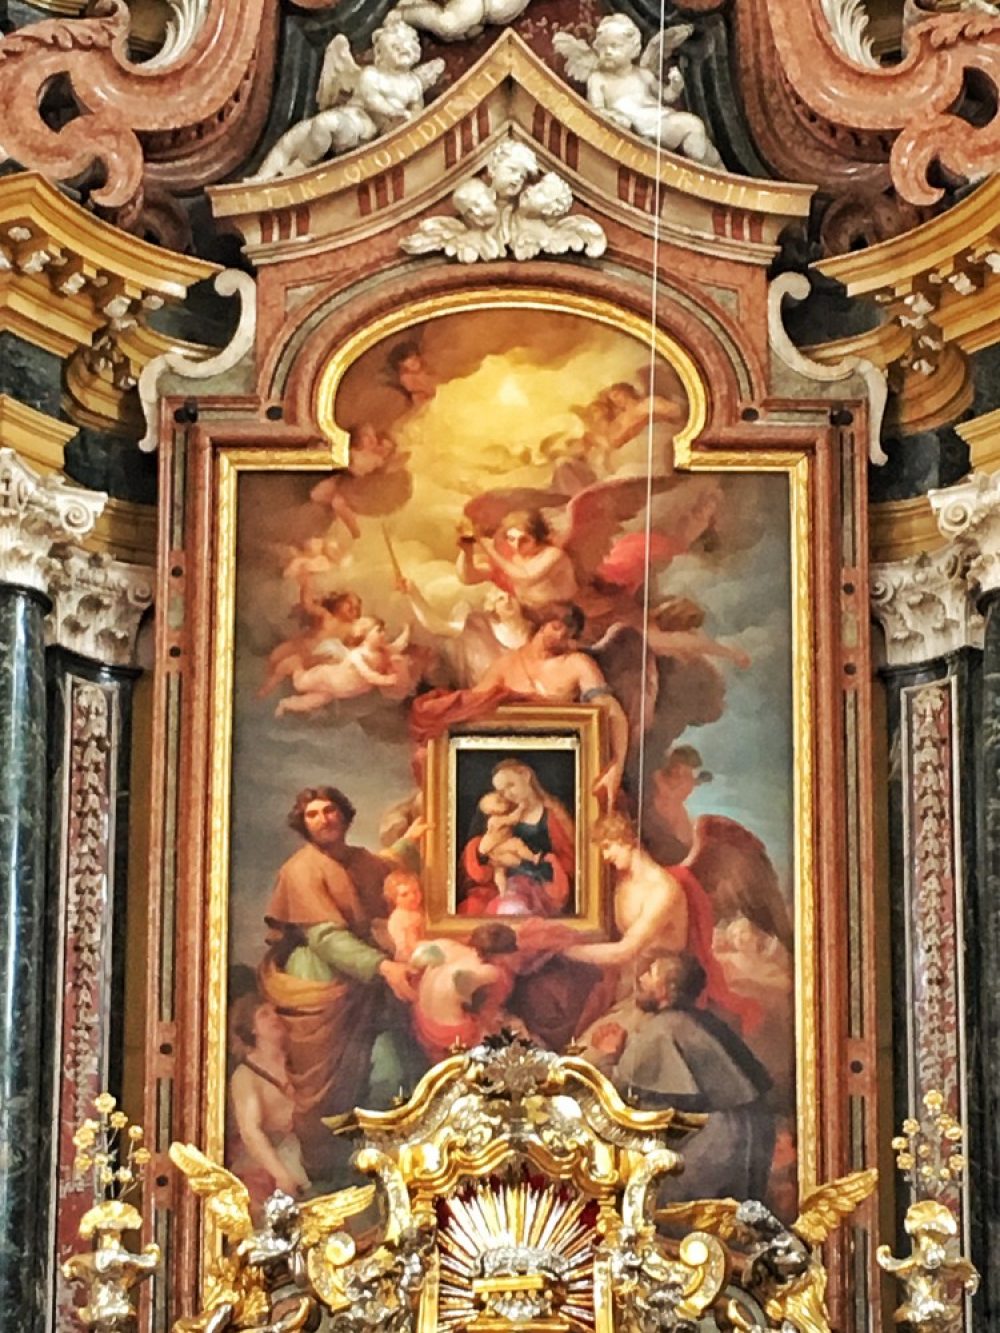 Das Antlitz des Hochaltars im Innsbrucker Dom in der Fastenzeit. Vom Gold- und Silberglanz ist nichts mehr zu sehen. 